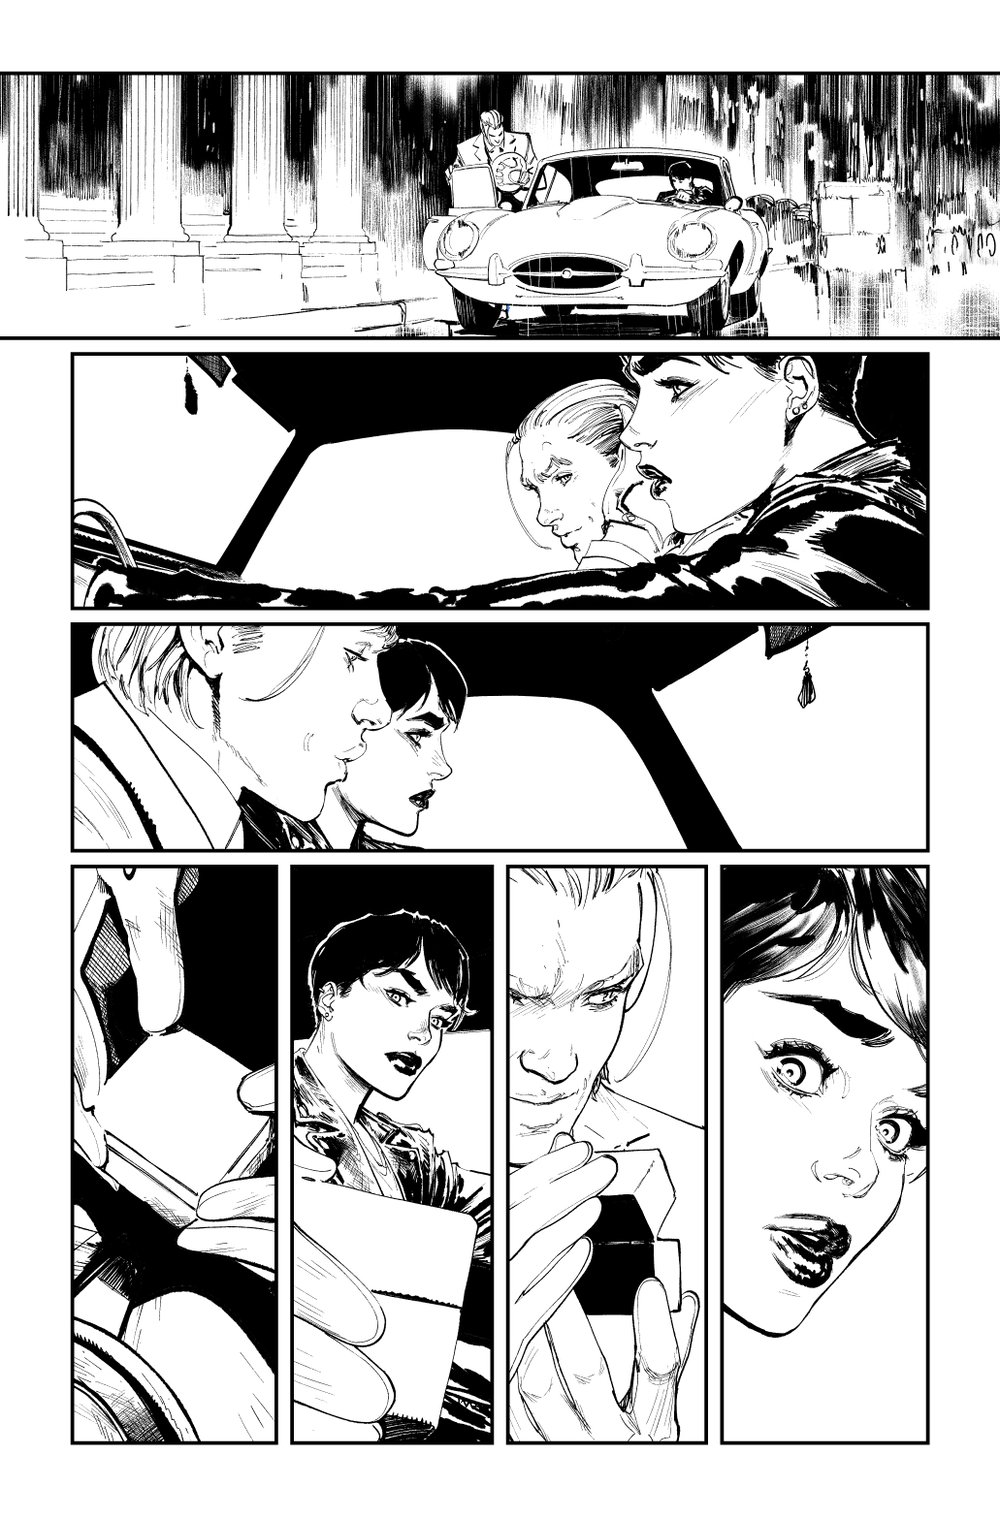 Image of BATMAN KILLING TIME #1 p.23